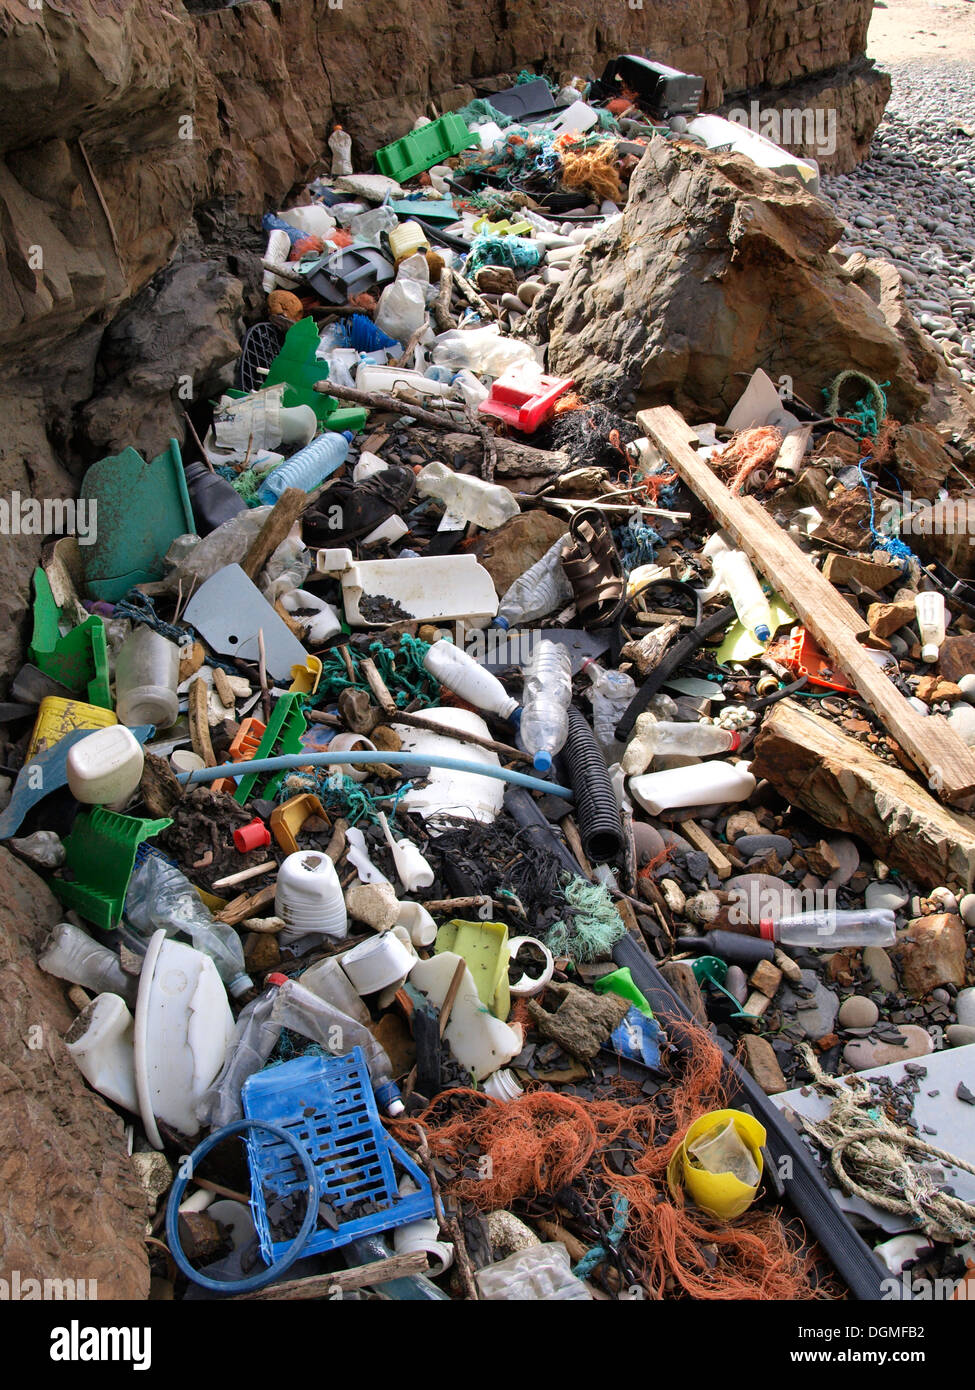 Plastic flotsam and jetsam washed up on a Cornish beach, Bude, Cornwall, UK Stock Photo